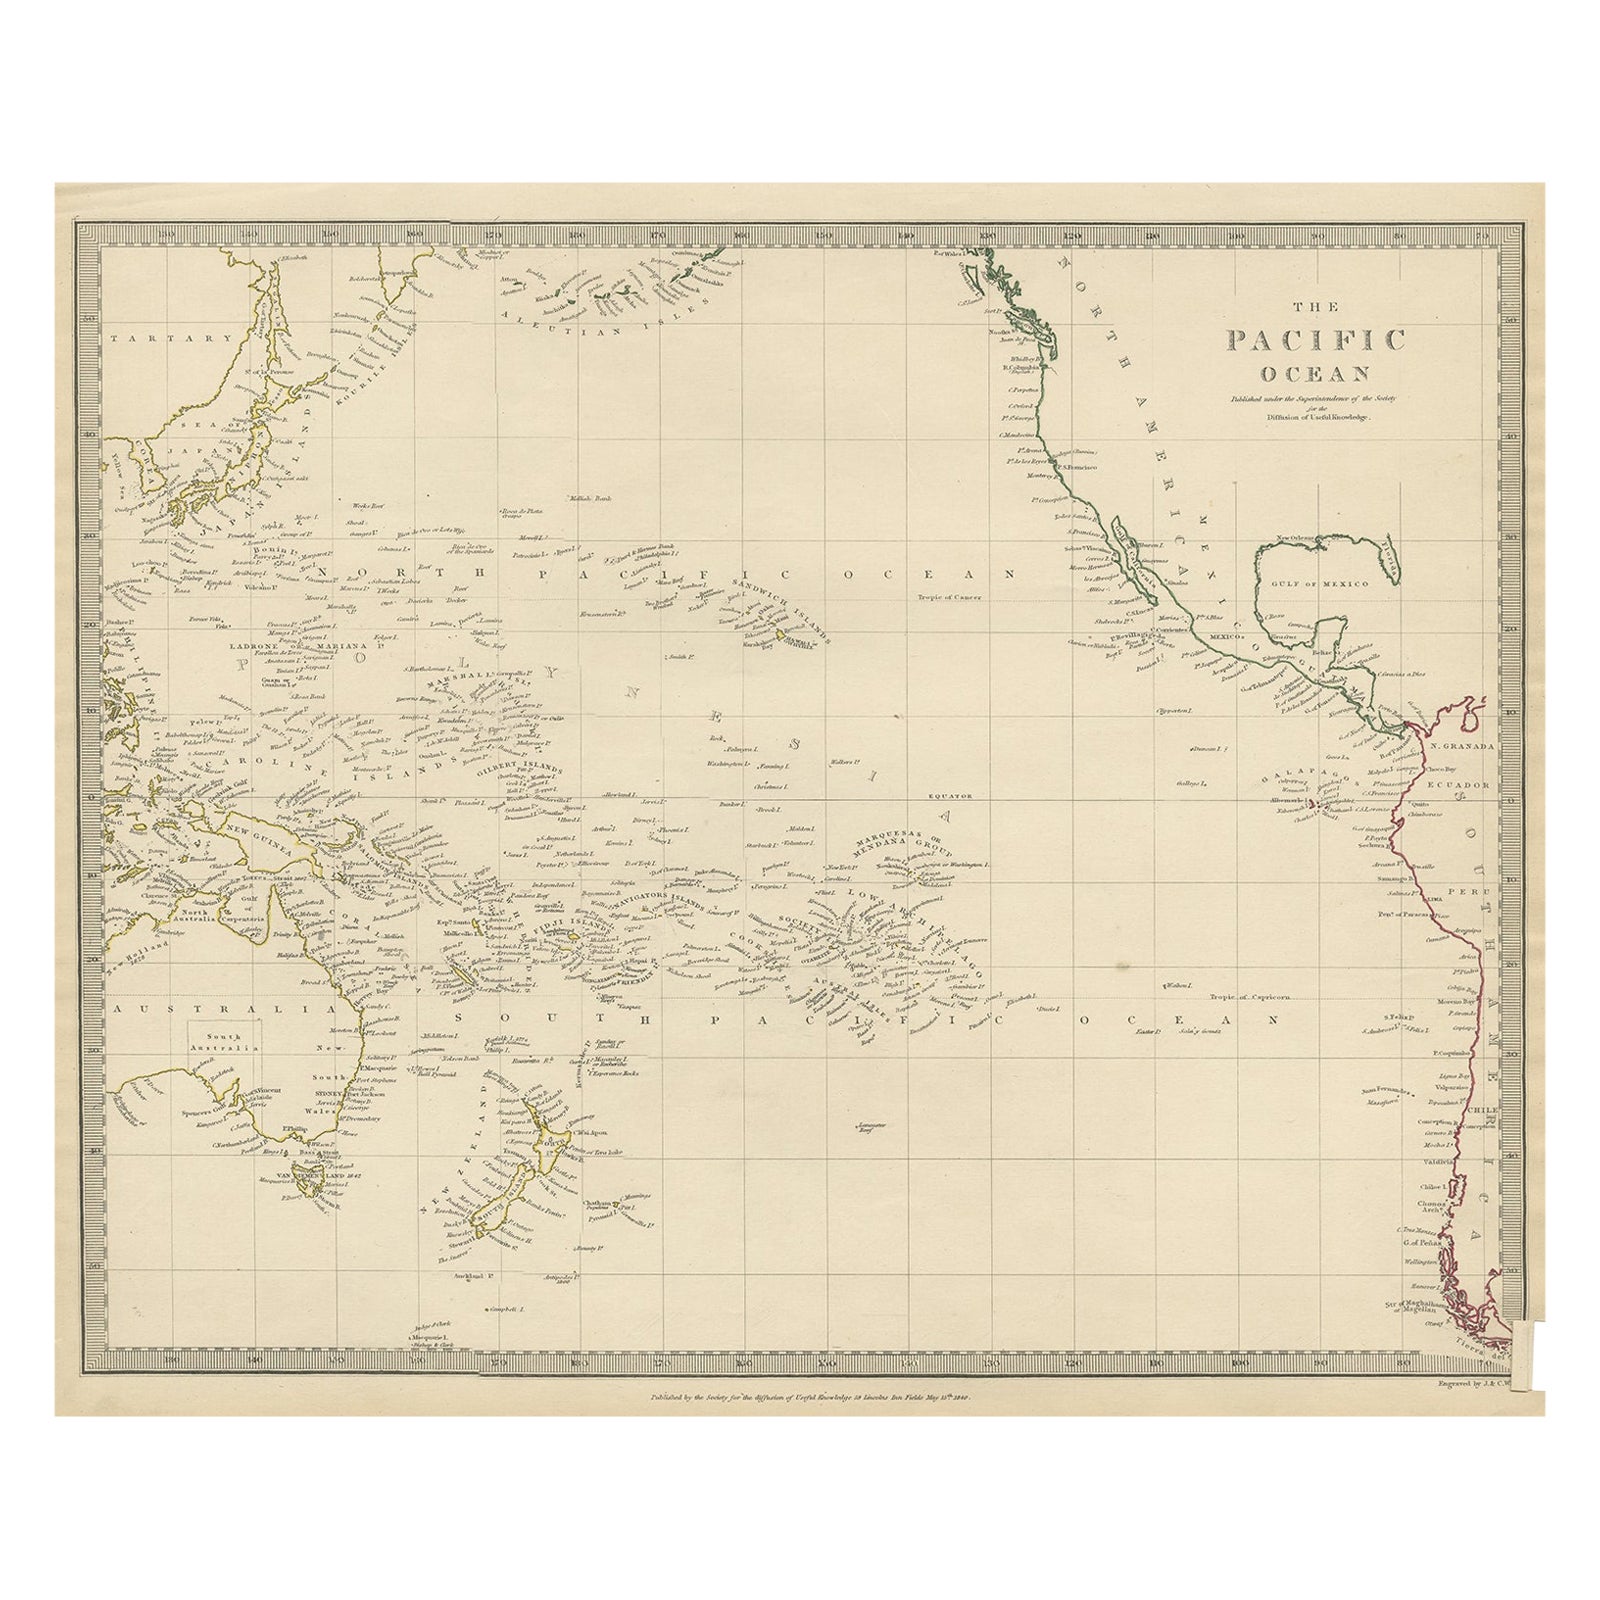 Carte ancienne de la Asie occidentale, de la Nouvelle-Zélande, de la Polynésie et de l'océan Pacifique, 1840